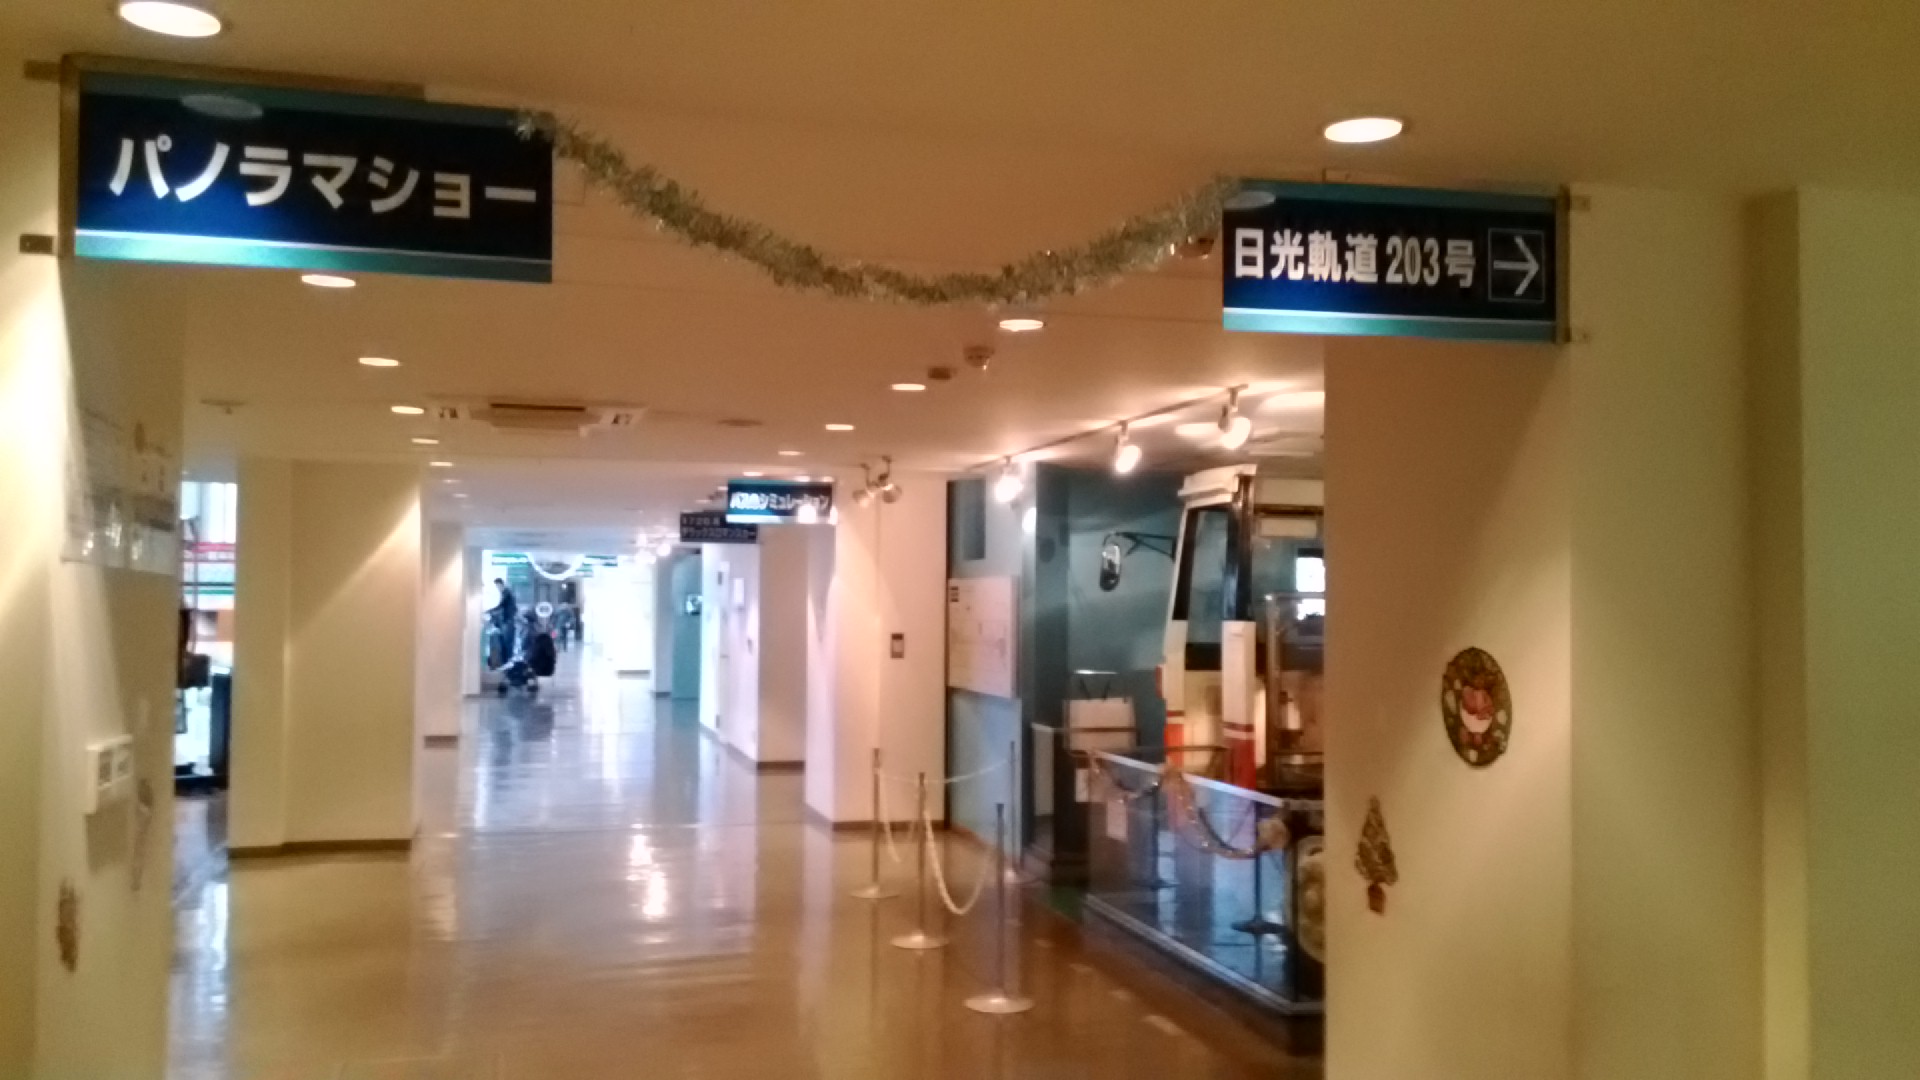 東武博物館でのお昼 ランチ は 館内にレストランや売店はある